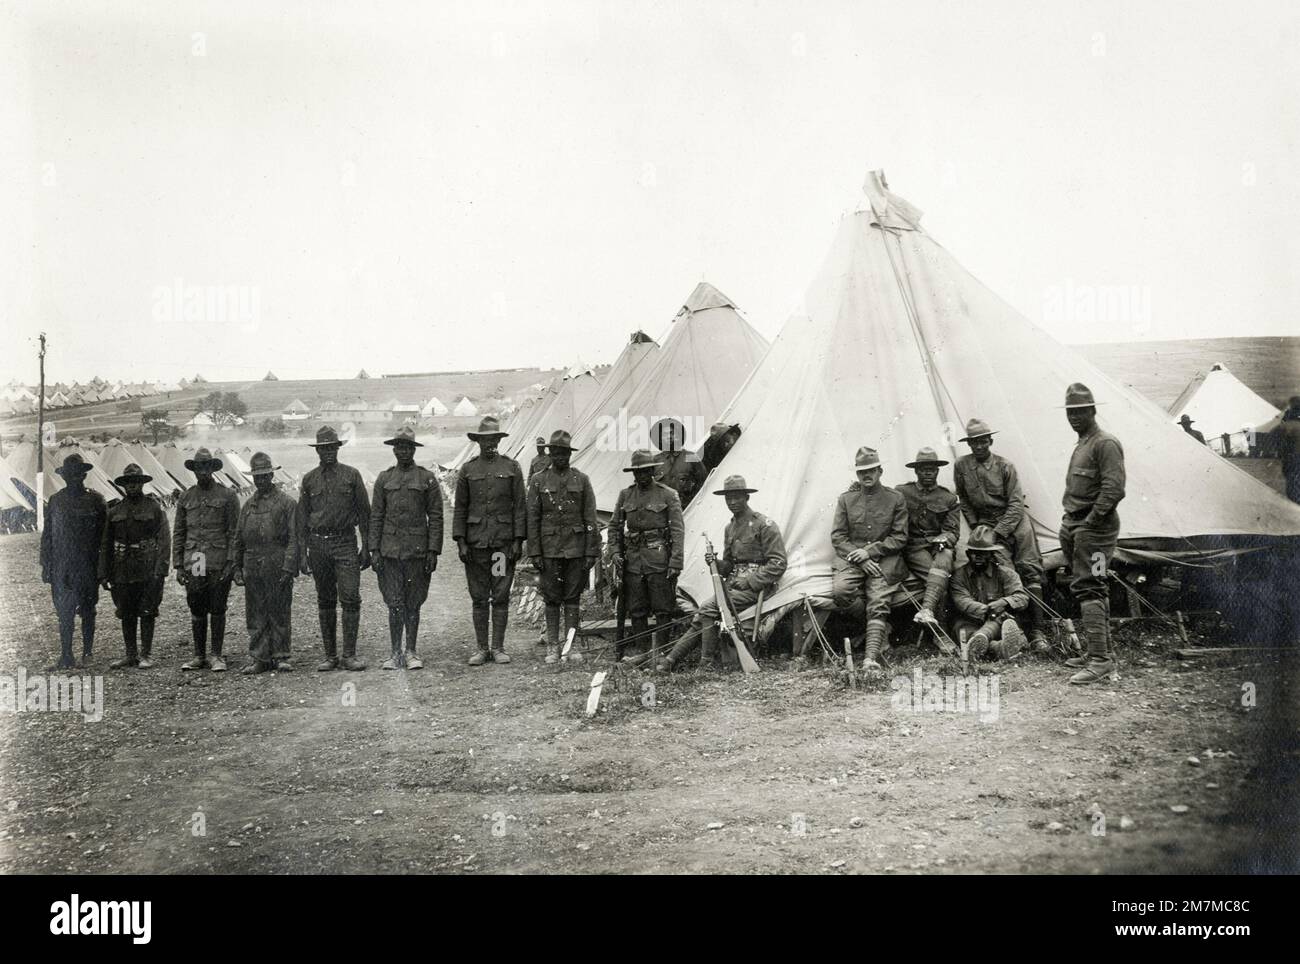 WW1 photo de la première Guerre mondiale - camp américain, soldats noirs, près de Verdun Banque D'Images